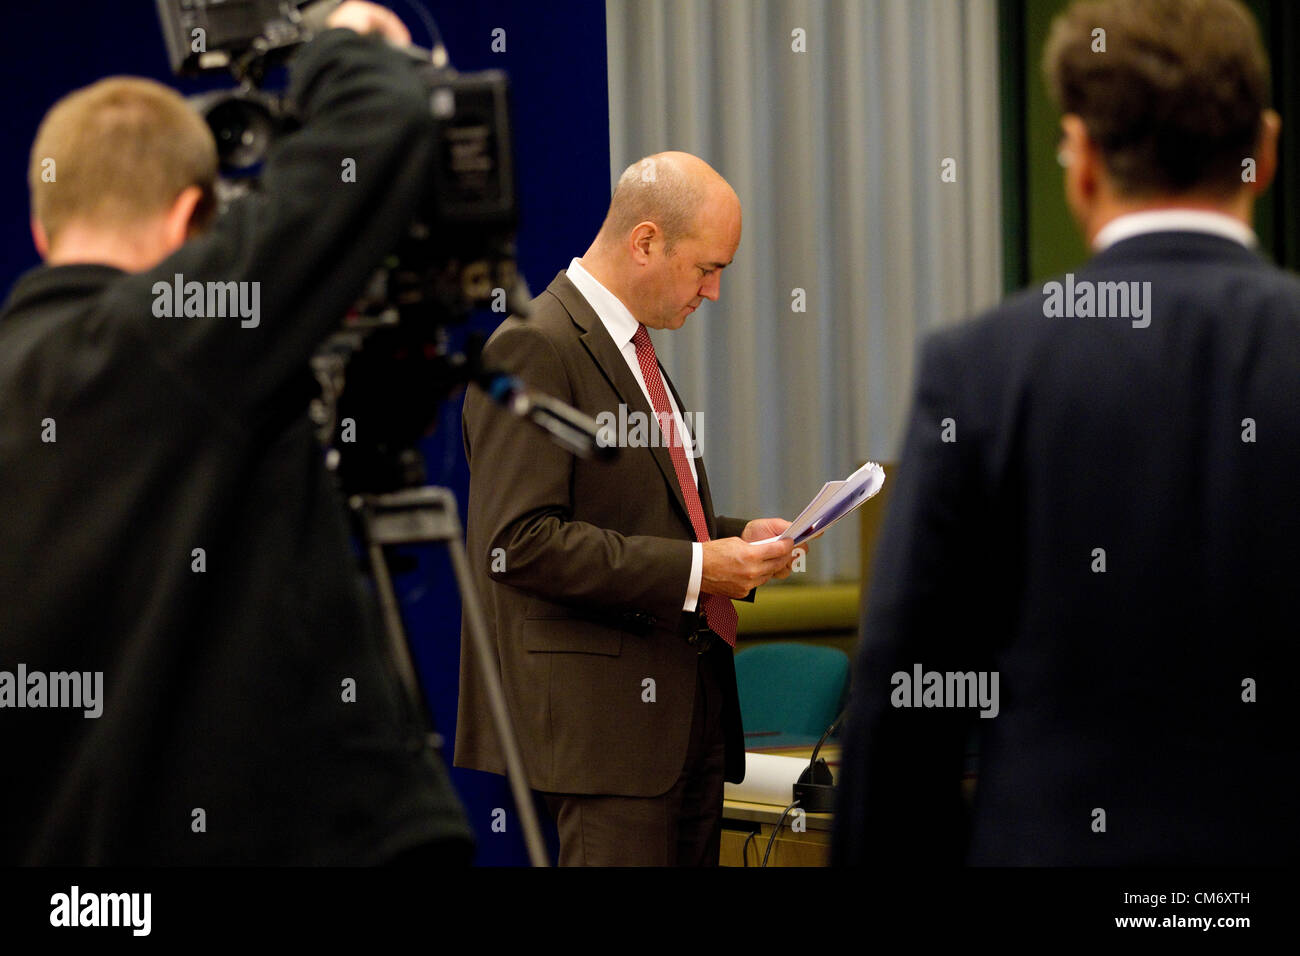 Brüssel, Brüssel, 19. Oktober 2012. Fredrik Reinfeldt, Premierminister von Schweden gibt eine Pressekonferenz in den frühen Morgenstunden des Freitag Vormittag auf der Tagung des Europäischen Rates in Brüssel, Justus-Lipsius-Gebäude. Foto: Jeff Gilbert. 19.10.2012. Brüssel, Belgien. Stockfoto